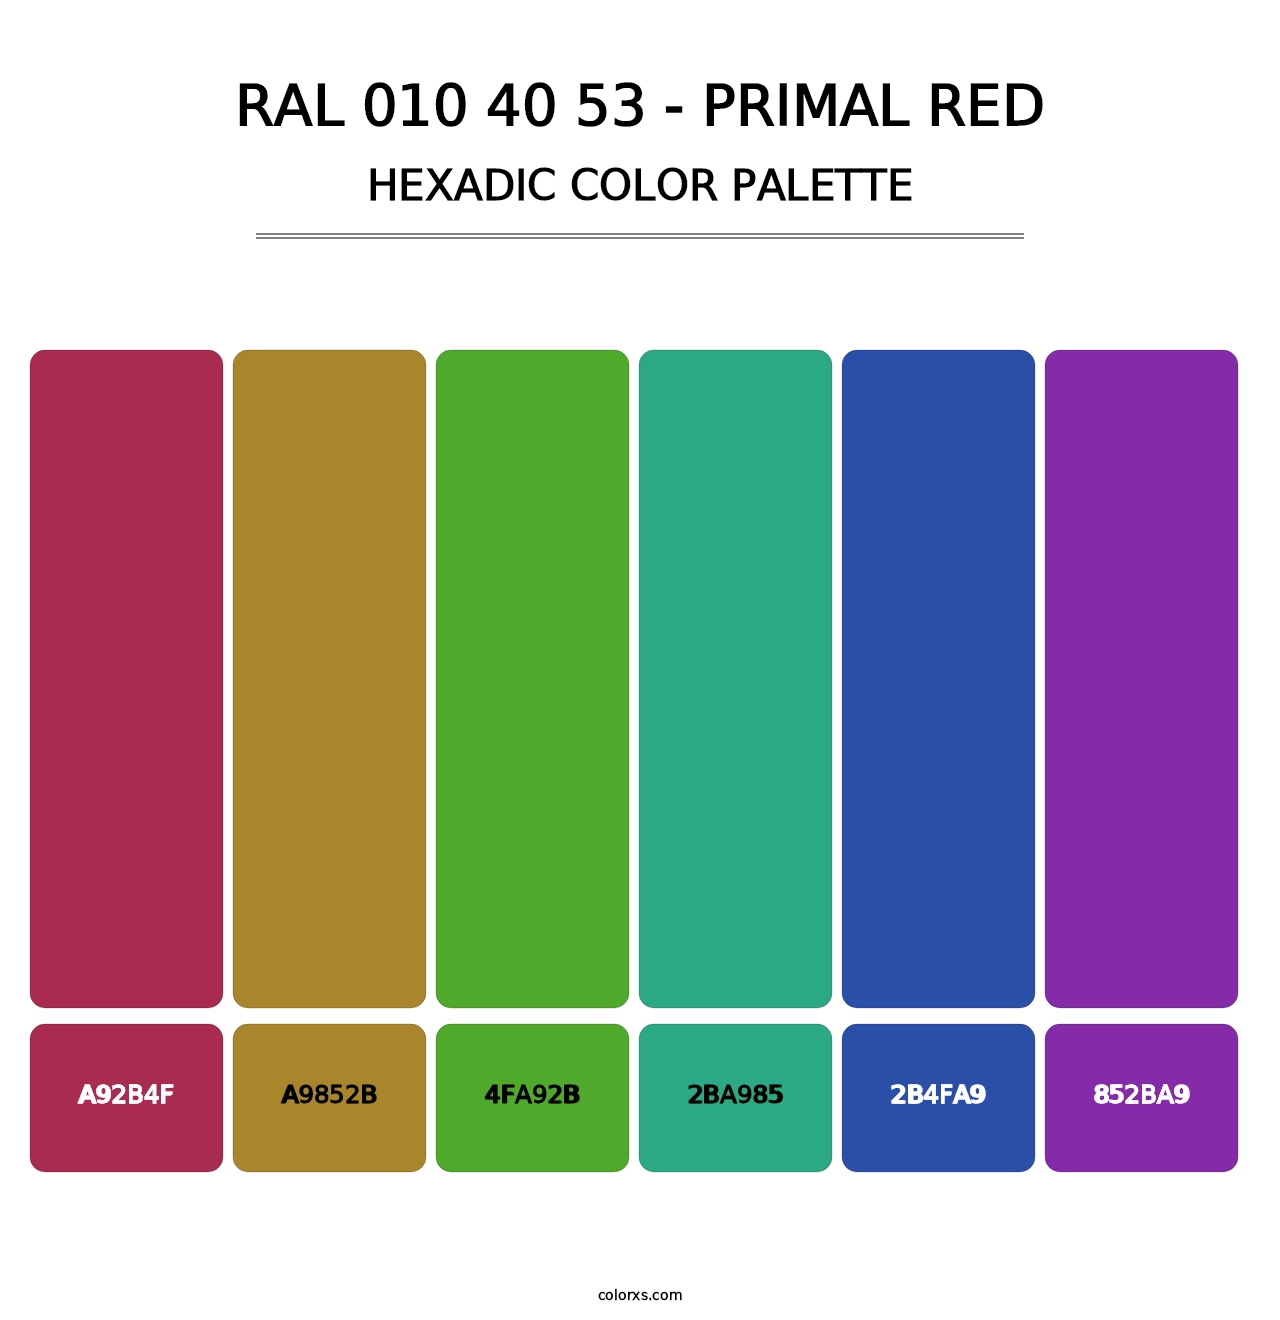 RAL 010 40 53 - Primal Red - Hexadic Color Palette